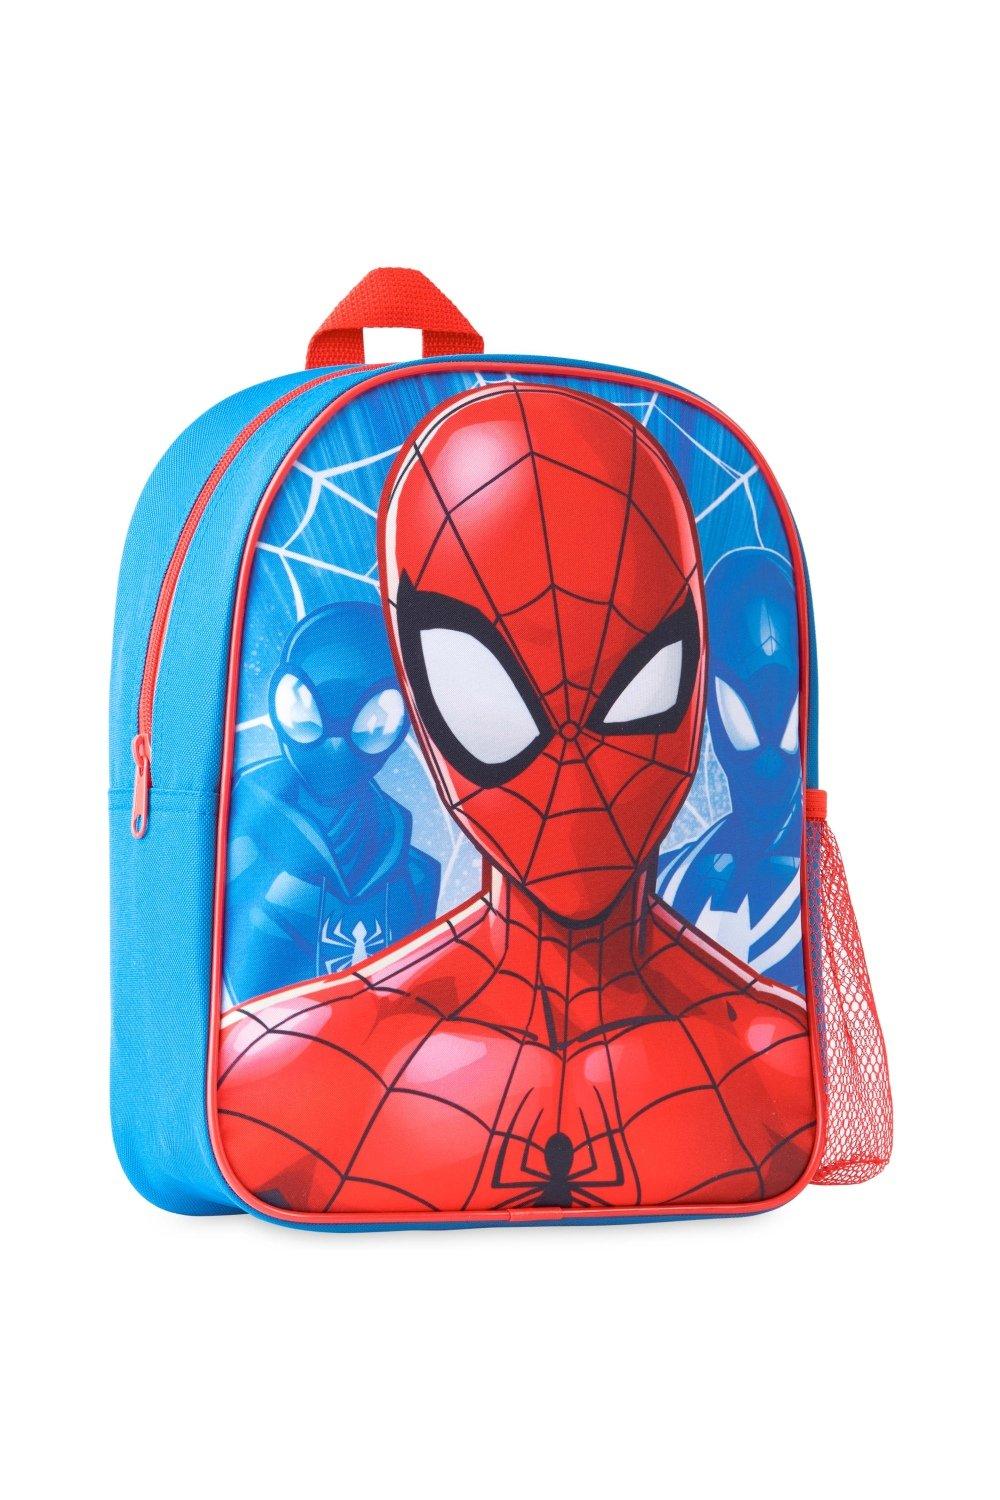 Школьный рюкзак Человека-паука Marvel, мультиколор рюкзак для девочек и мальчиков с аниме демоном школьный ранец для slayer большой дорожный рюкзак холщовые школьные ранцы для подростков